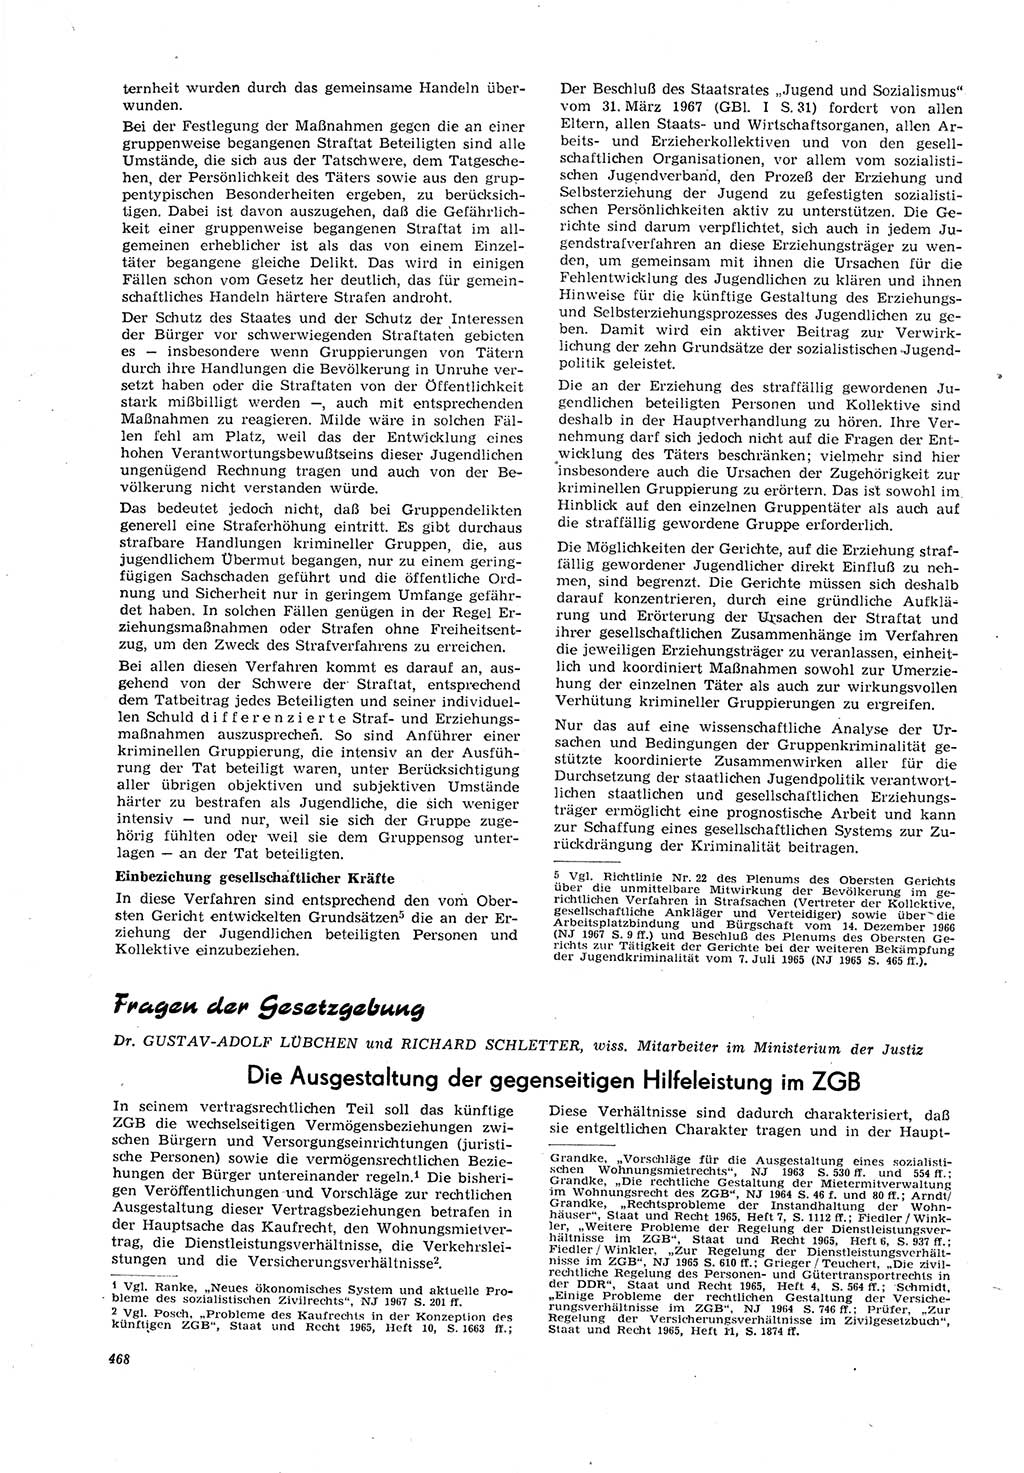 Neue Justiz (NJ), Zeitschrift für Recht und Rechtswissenschaft [Deutsche Demokratische Republik (DDR)], 21. Jahrgang 1967, Seite 468 (NJ DDR 1967, S. 468)